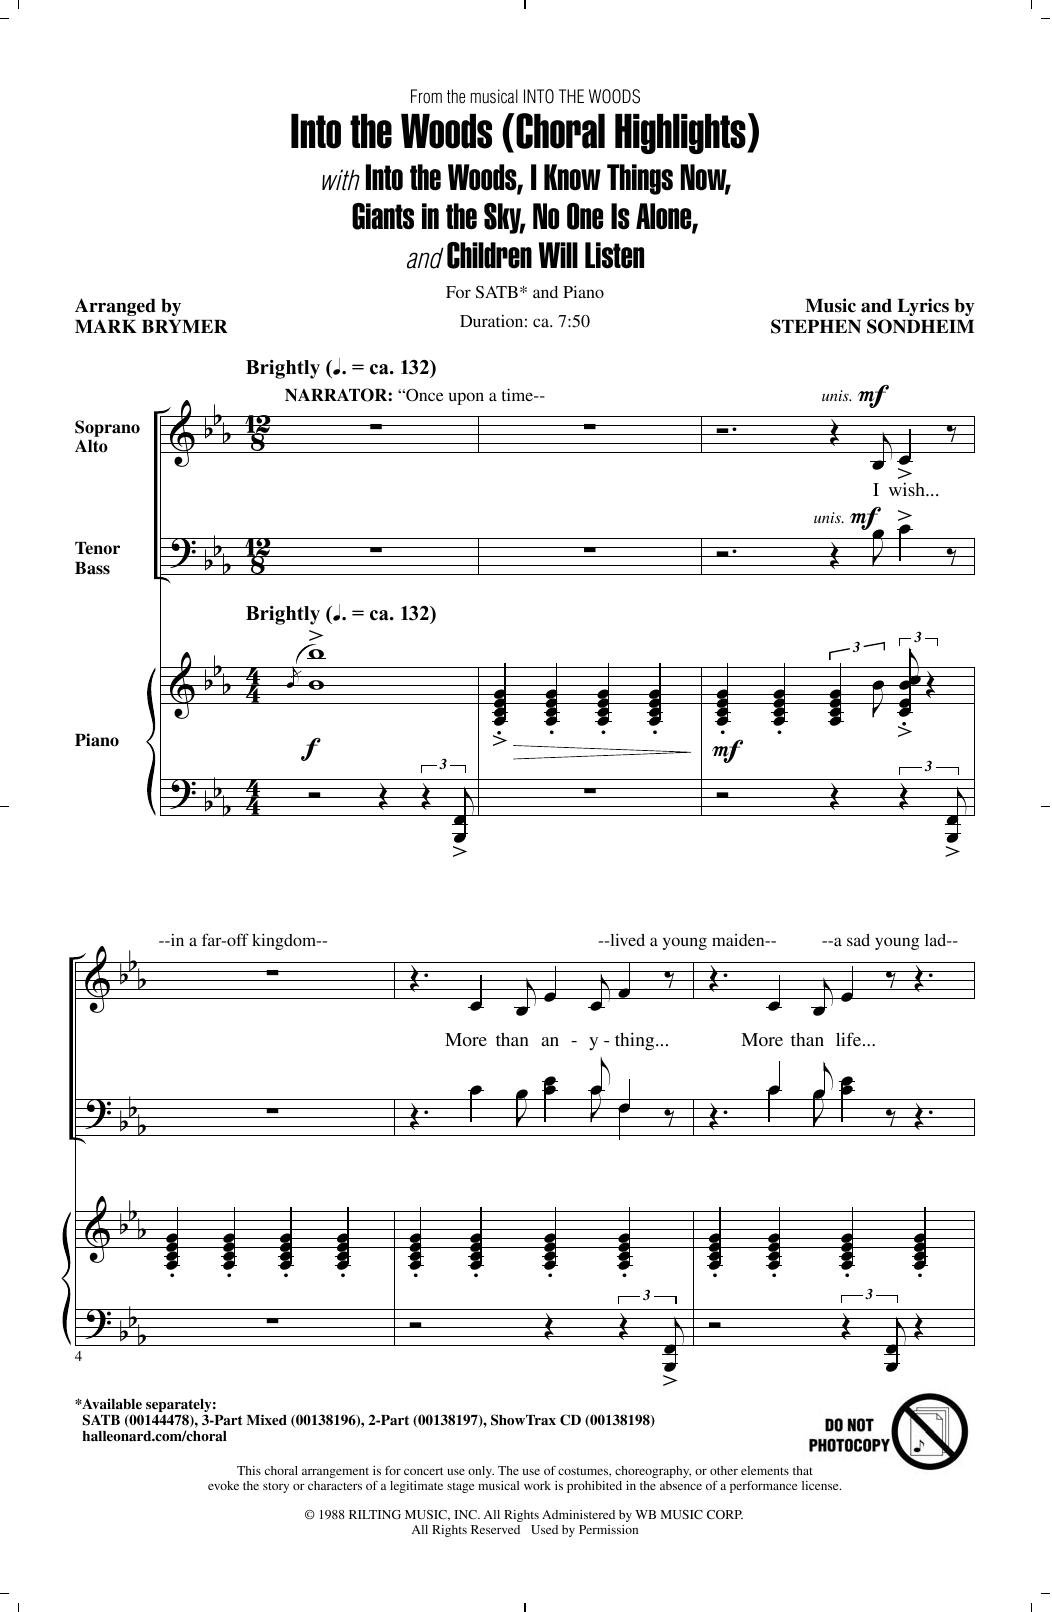 Act I Opening - Part I (SATB Choir) von Mark Brymer